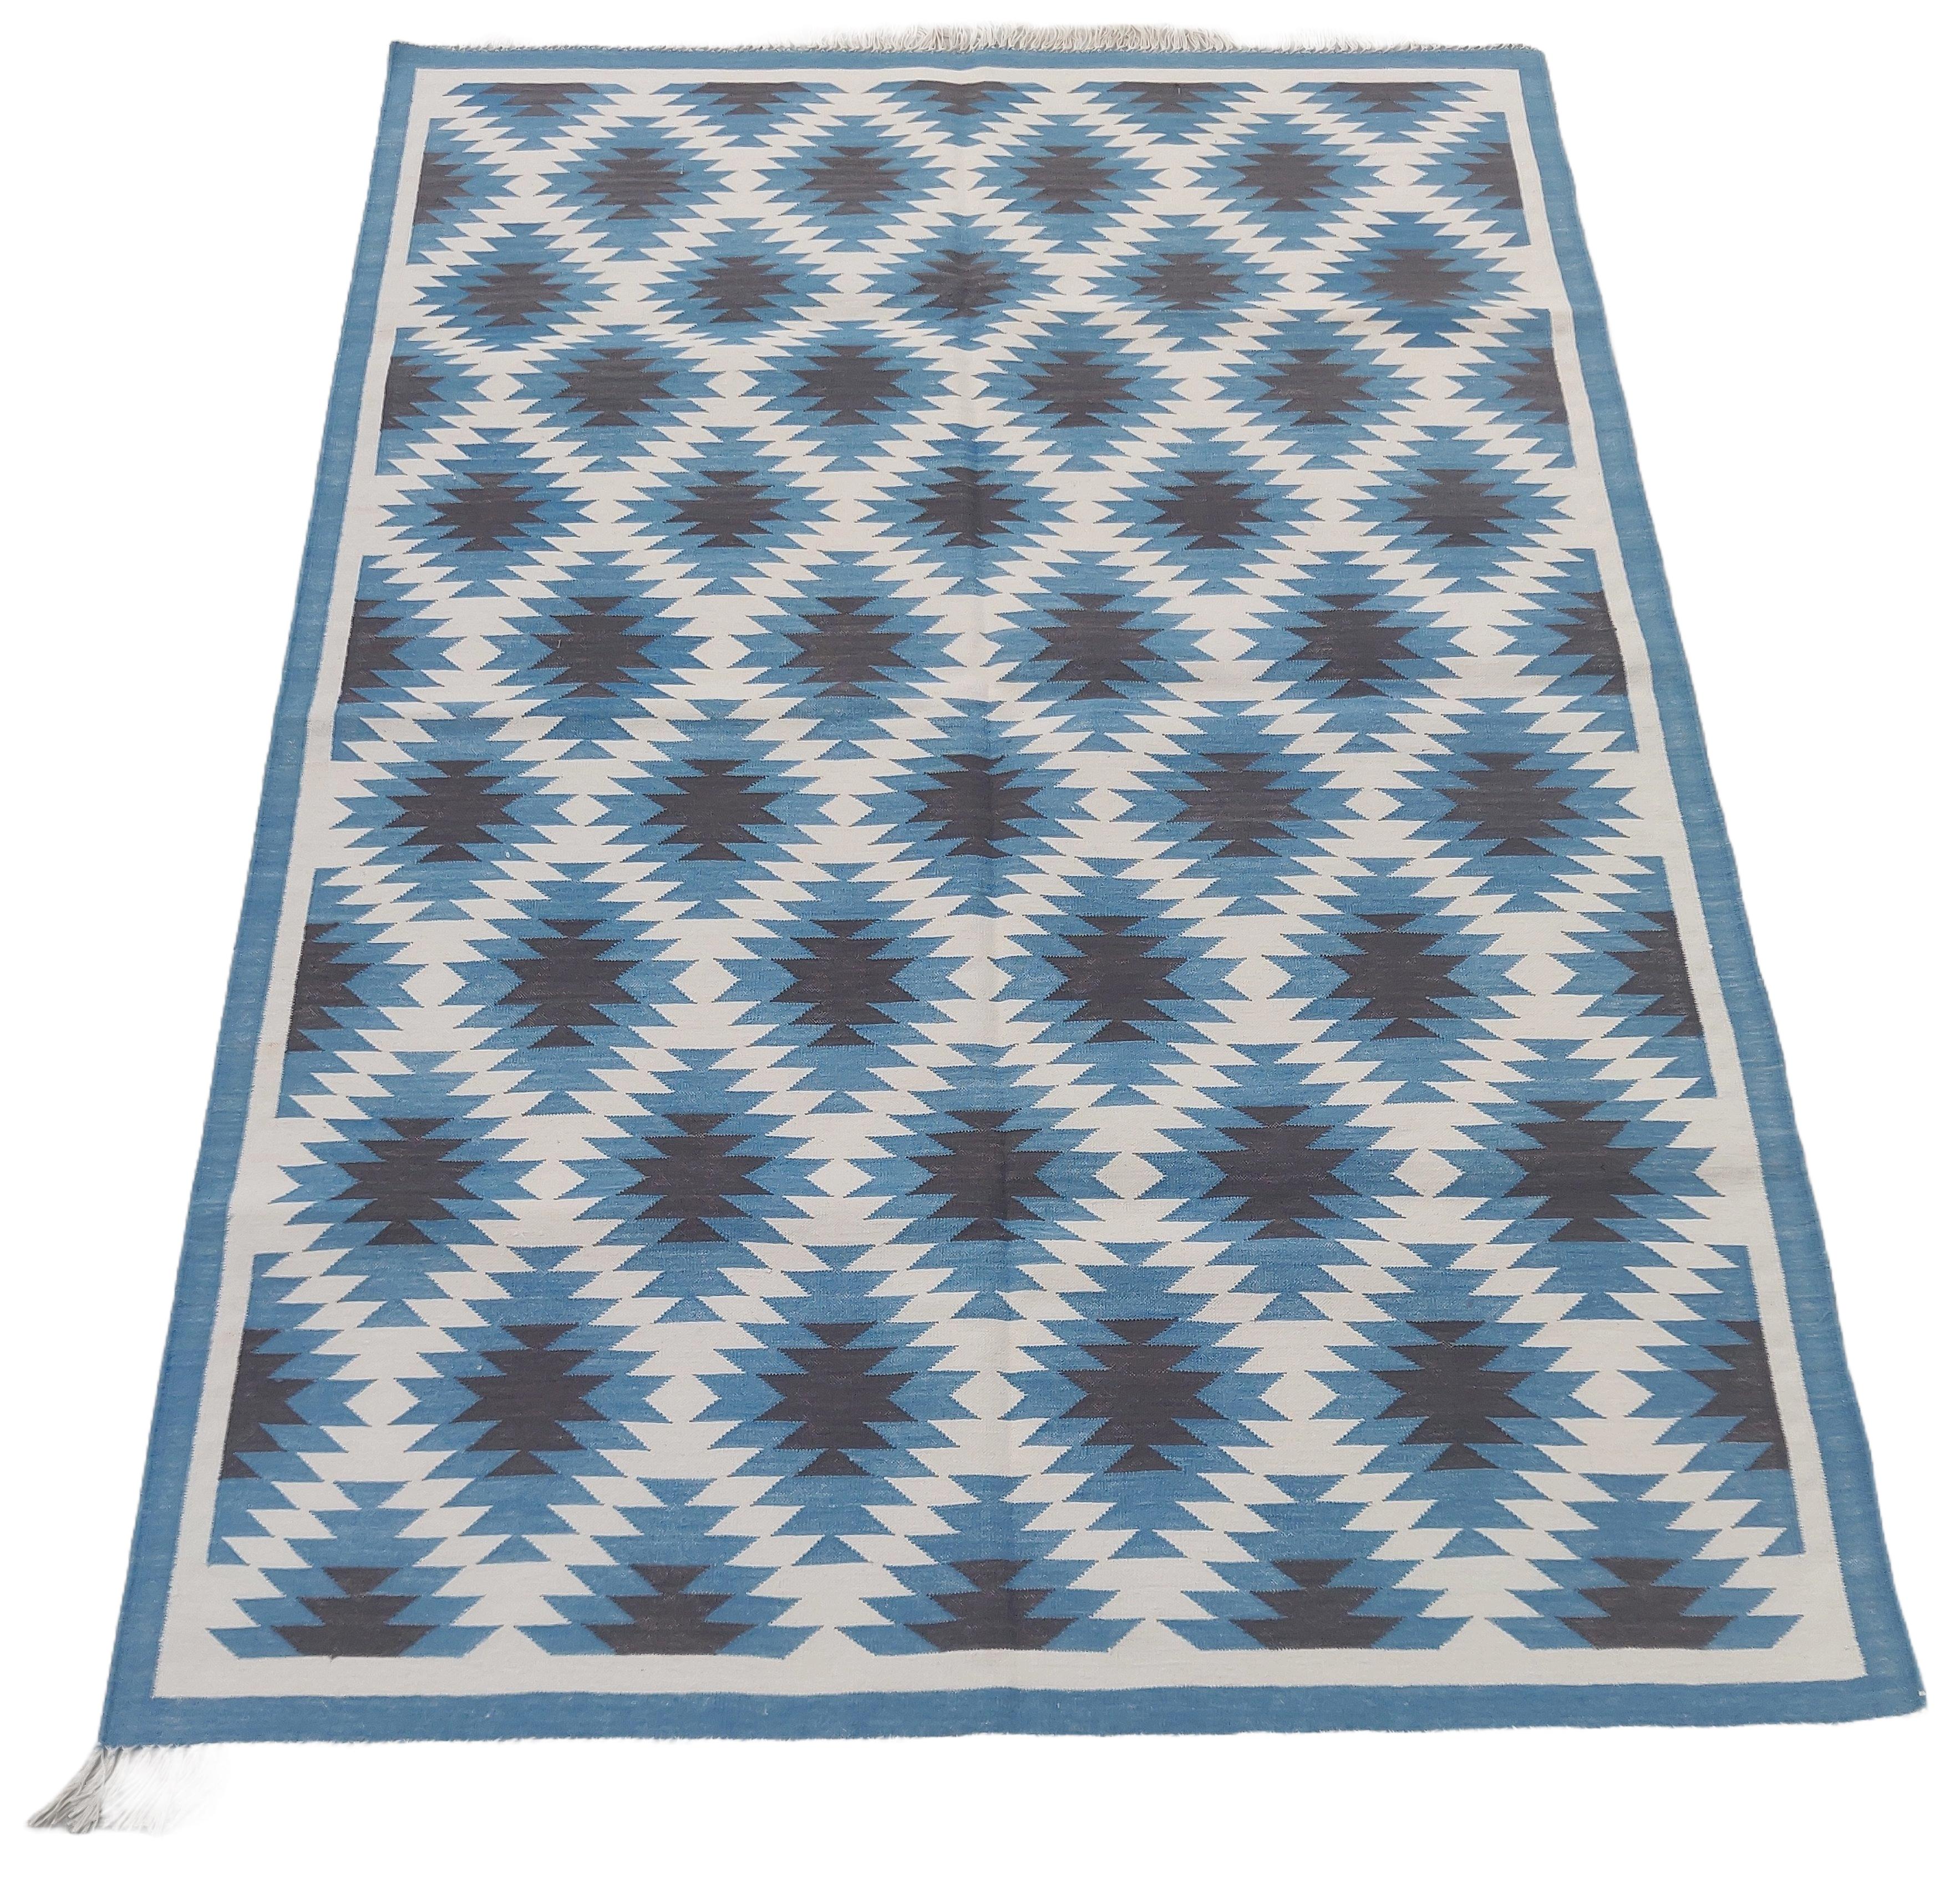 Vegetabil gefärbte Baumwolle Blau und Weiß Geometrischer Indischer Dhurrie Teppich-4'x6' 

Diese speziellen flachgewebten Dhurries werden aus 15-fachem Garn aus 100% Baumwolle handgewebt. Aufgrund der speziellen Fertigungstechniken, die zur